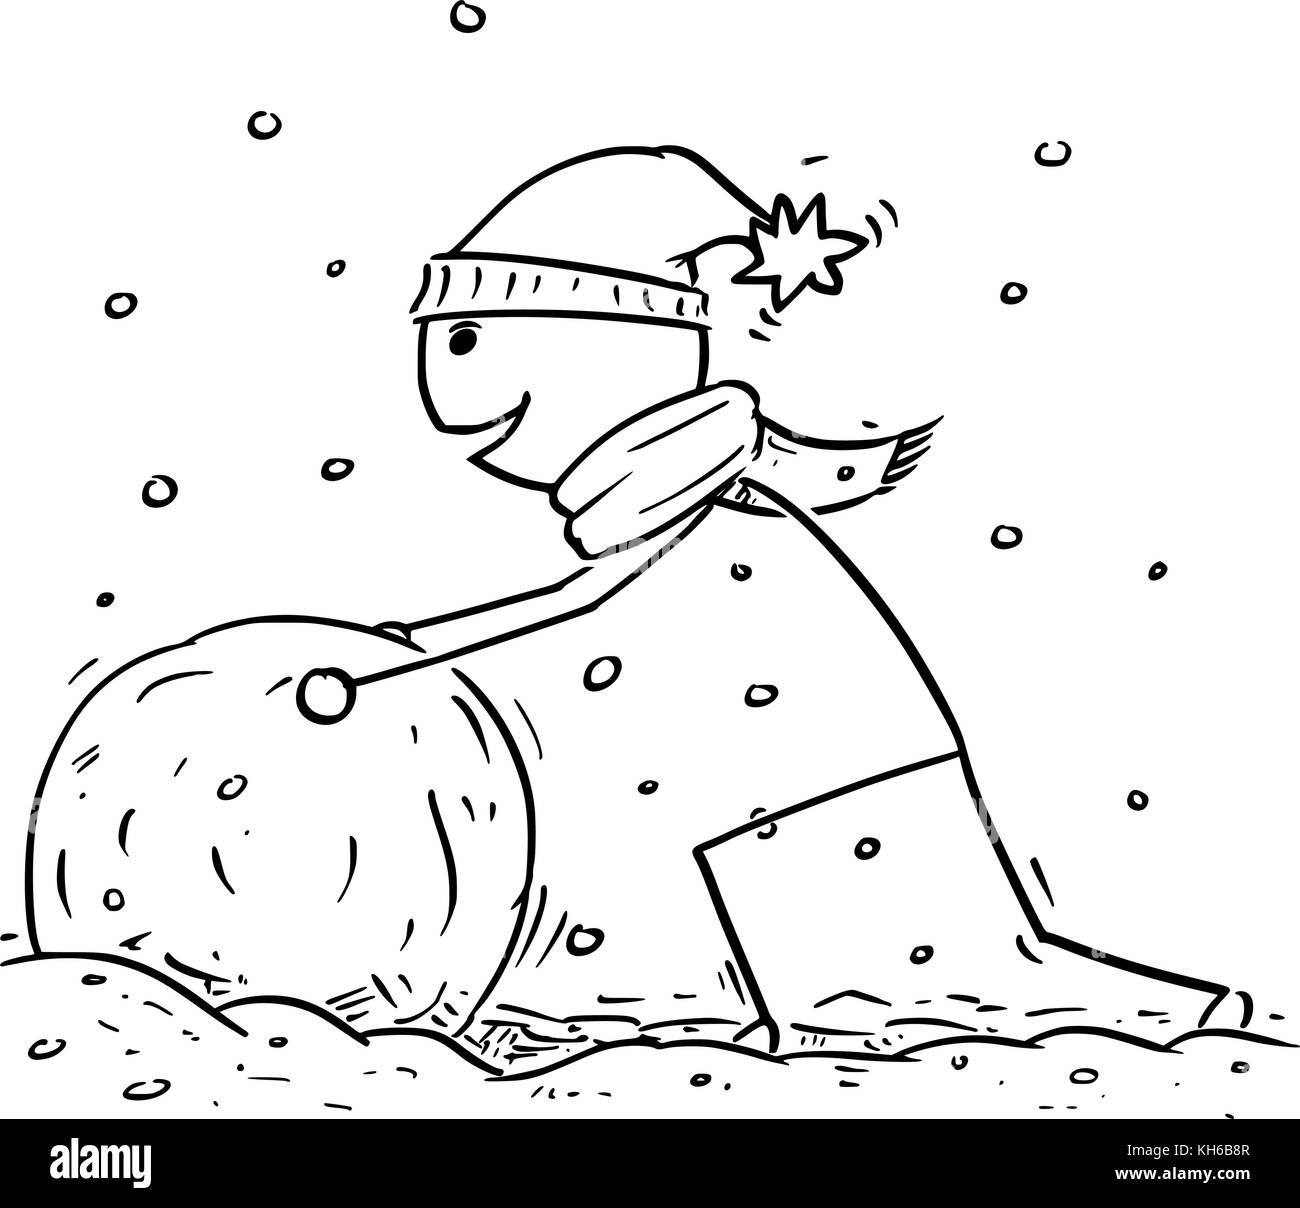 Cartoon stick man dessin illustration de l'homme faire de gros bonhomme de neige pendant l'hiver de neige. Illustration de Vecteur